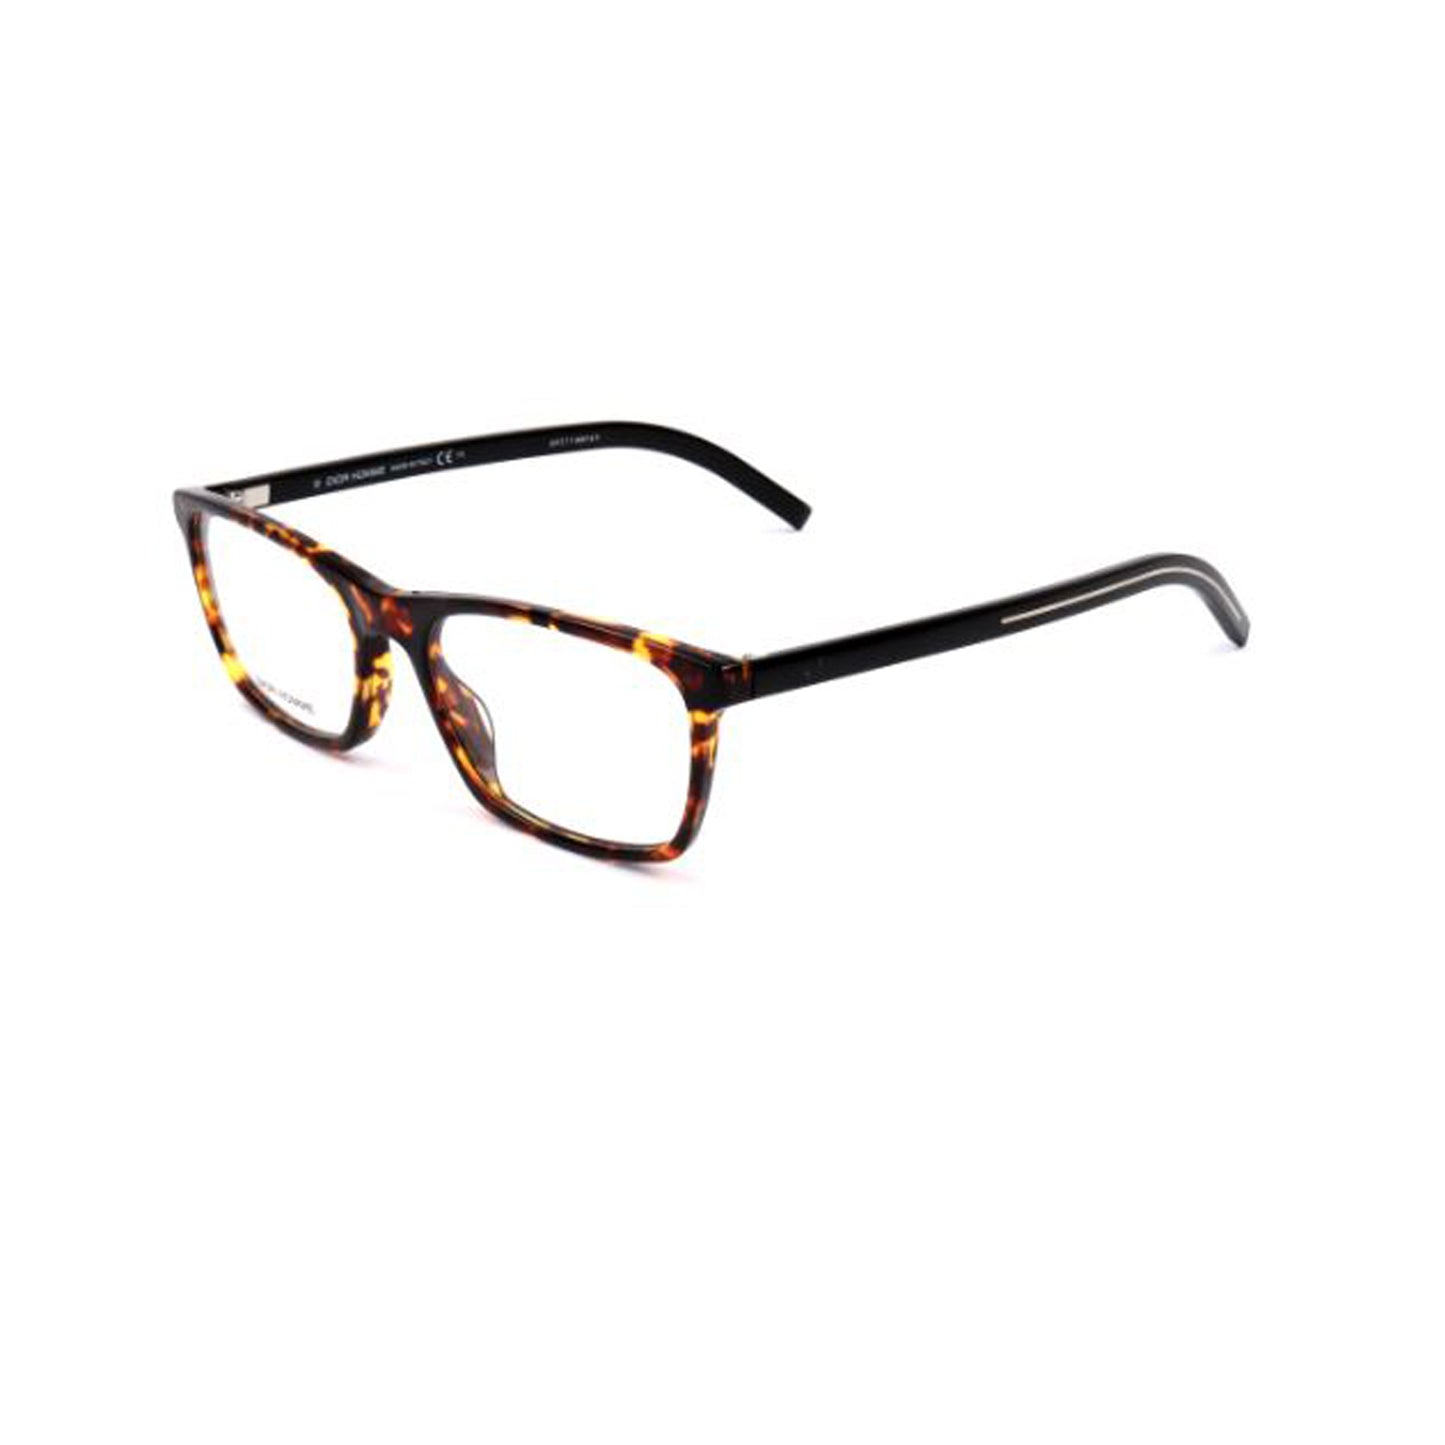 Dior Black Square Acetate Full Rim Eyeglasses BLKTIE253-Y23